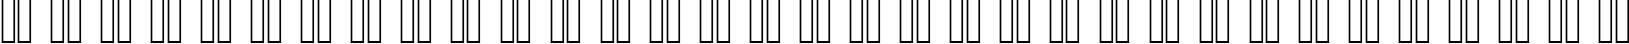 Пример написания русского алфавита шрифтом Freestyle Script